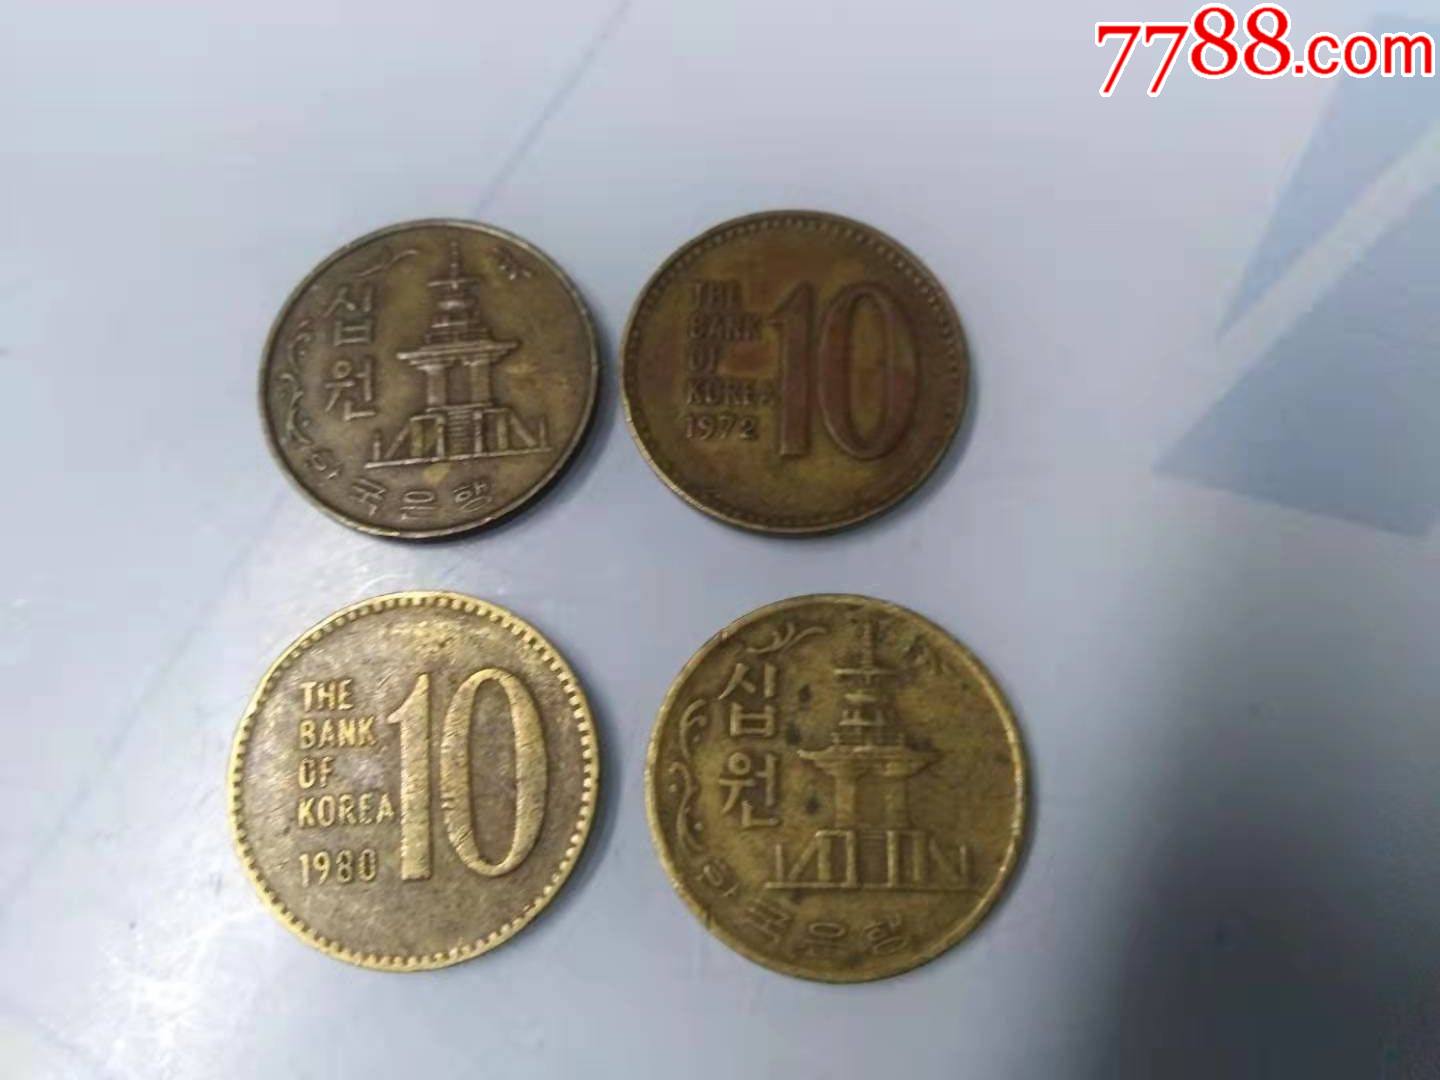 十元硬币发行图片